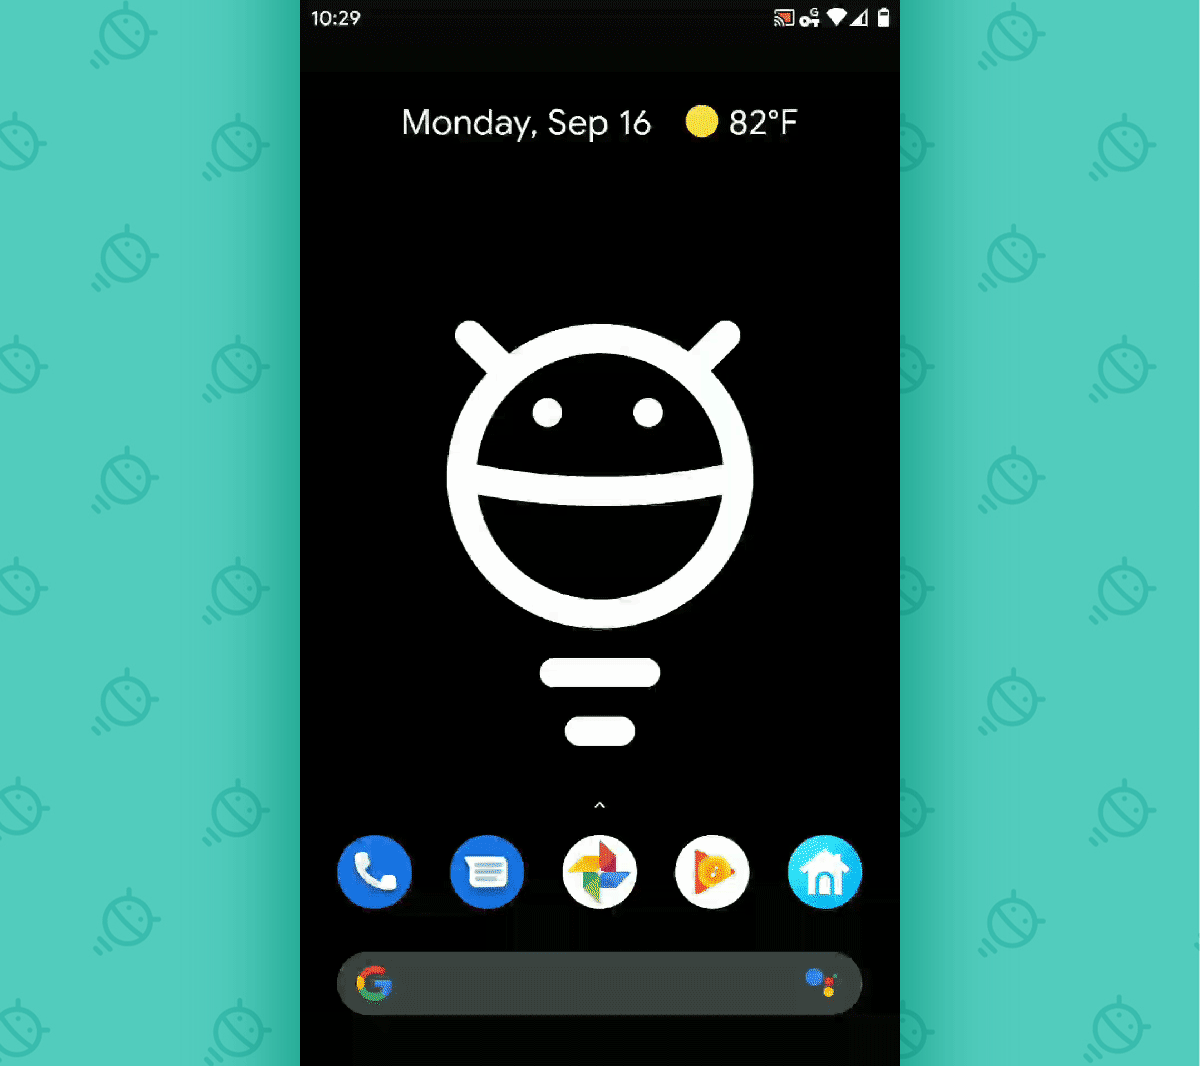 Gestos de Android 10: deslizar la aplicación